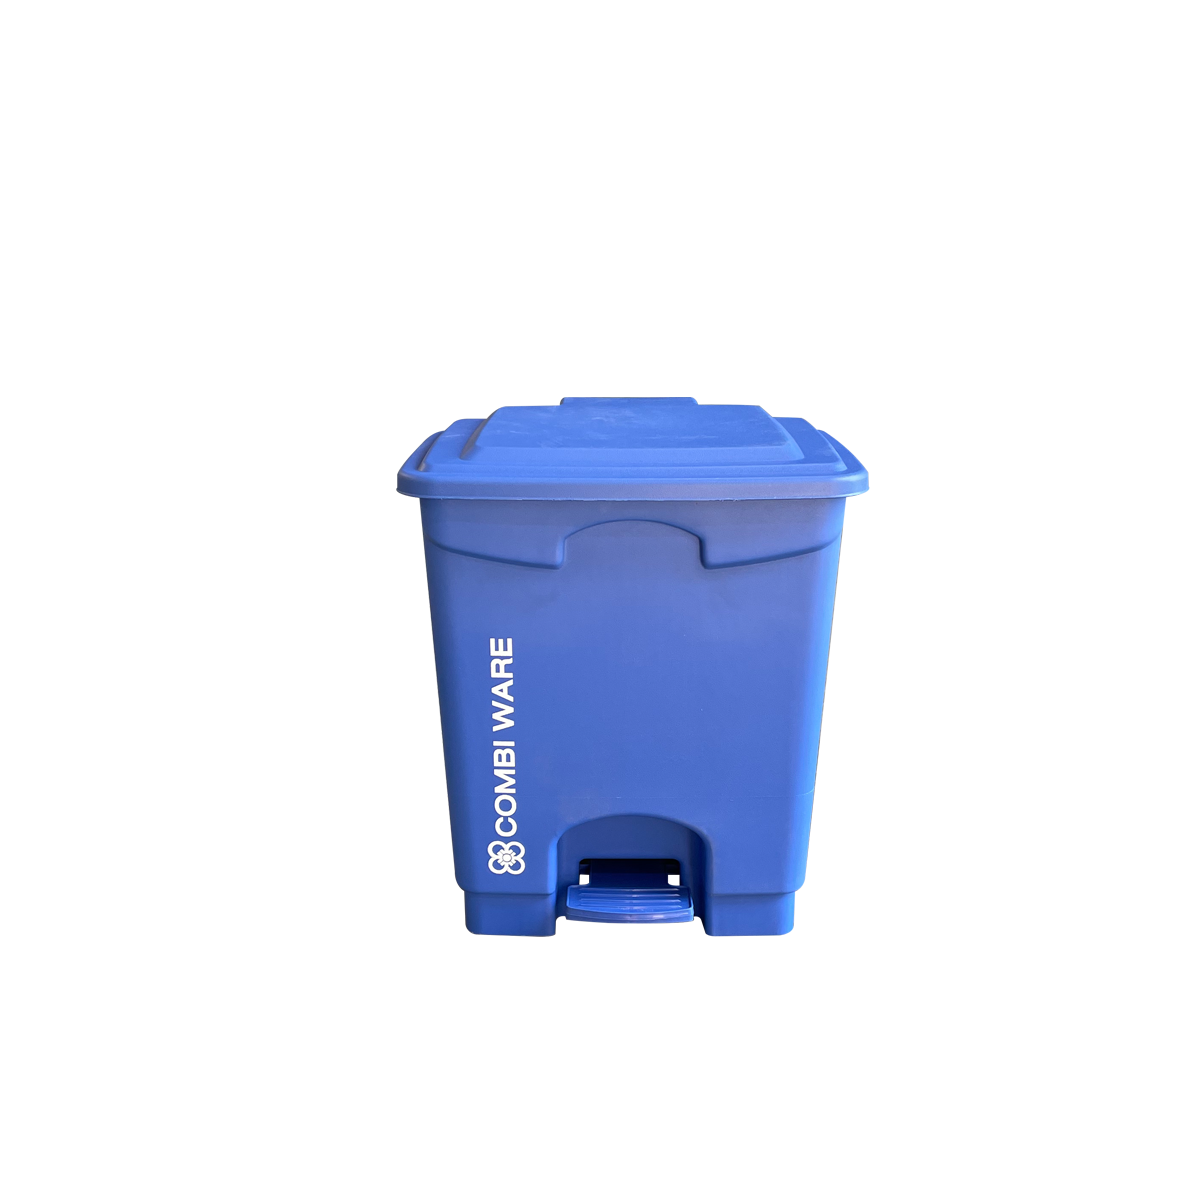 ถังขยะพลาสติก ขนาด 15 ลิตร แบบมีเท้าเหยียบ สีน้ำเงิน